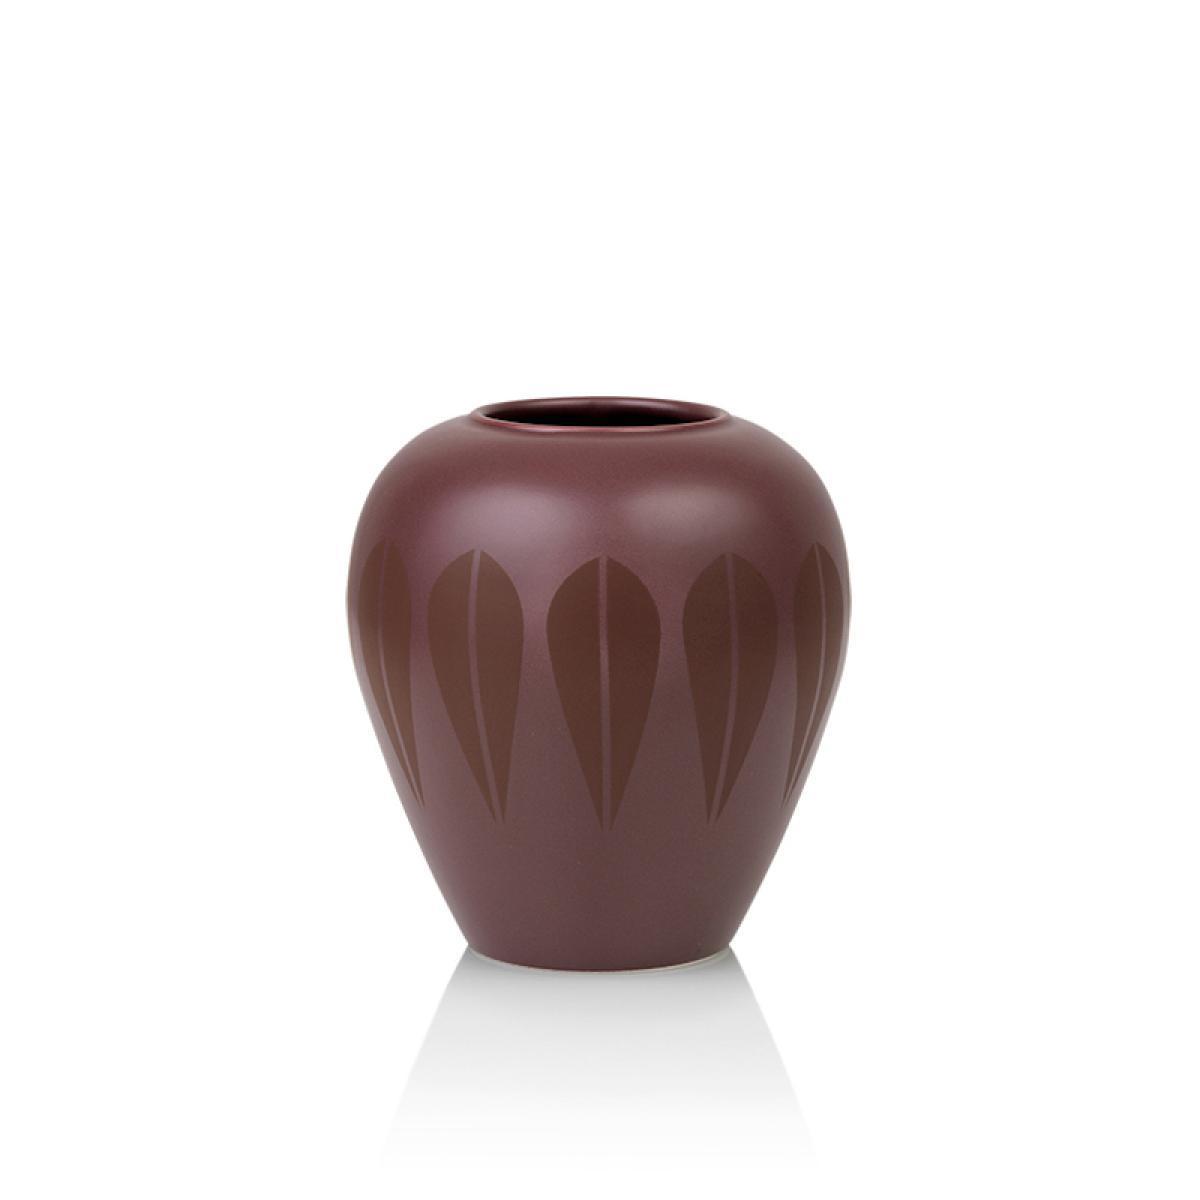 Lucie Kaas Arne Clausen Ceramics Vase mörkröd, 17 cm